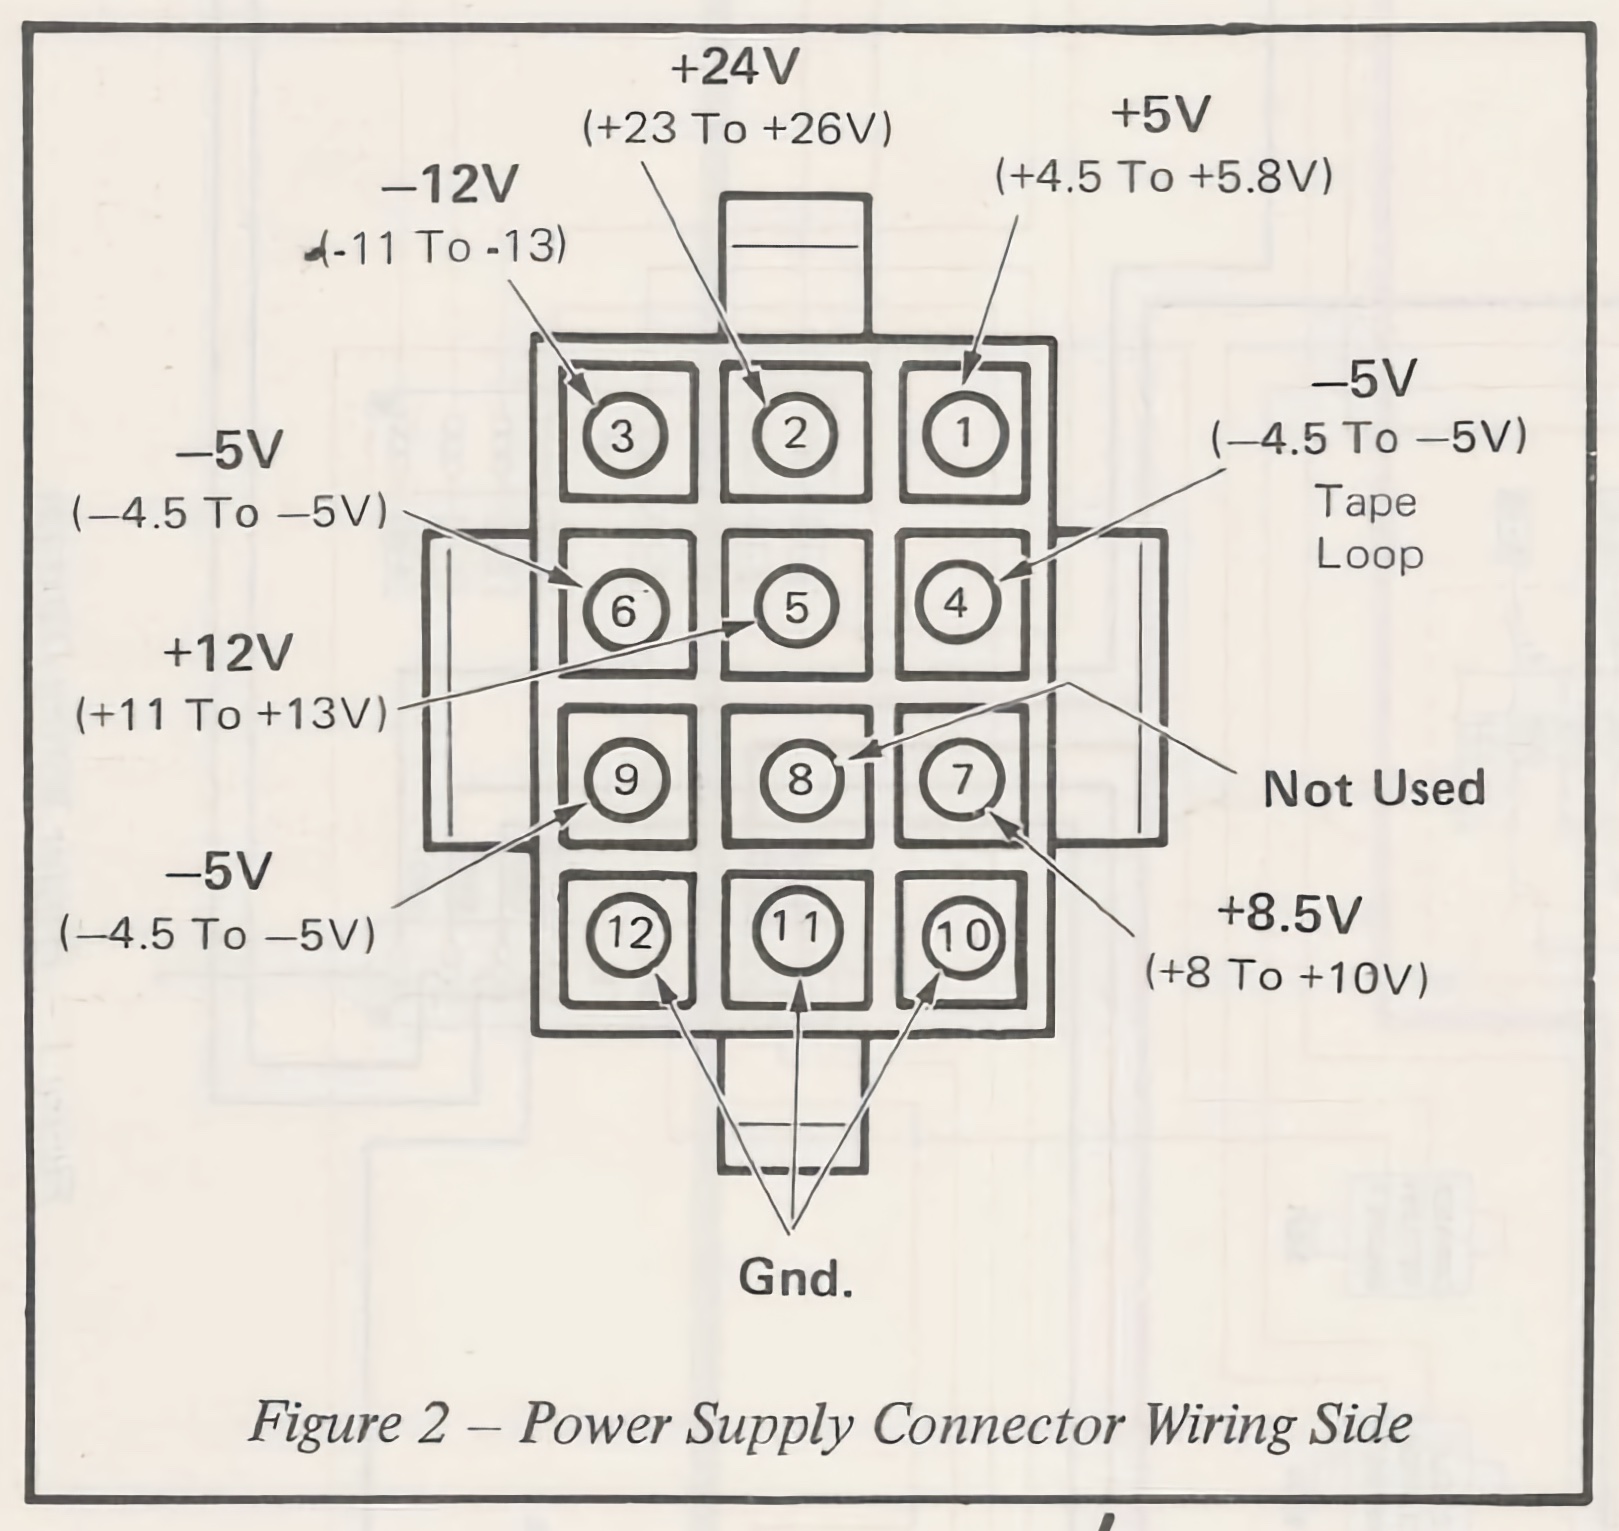 DC connector voltages